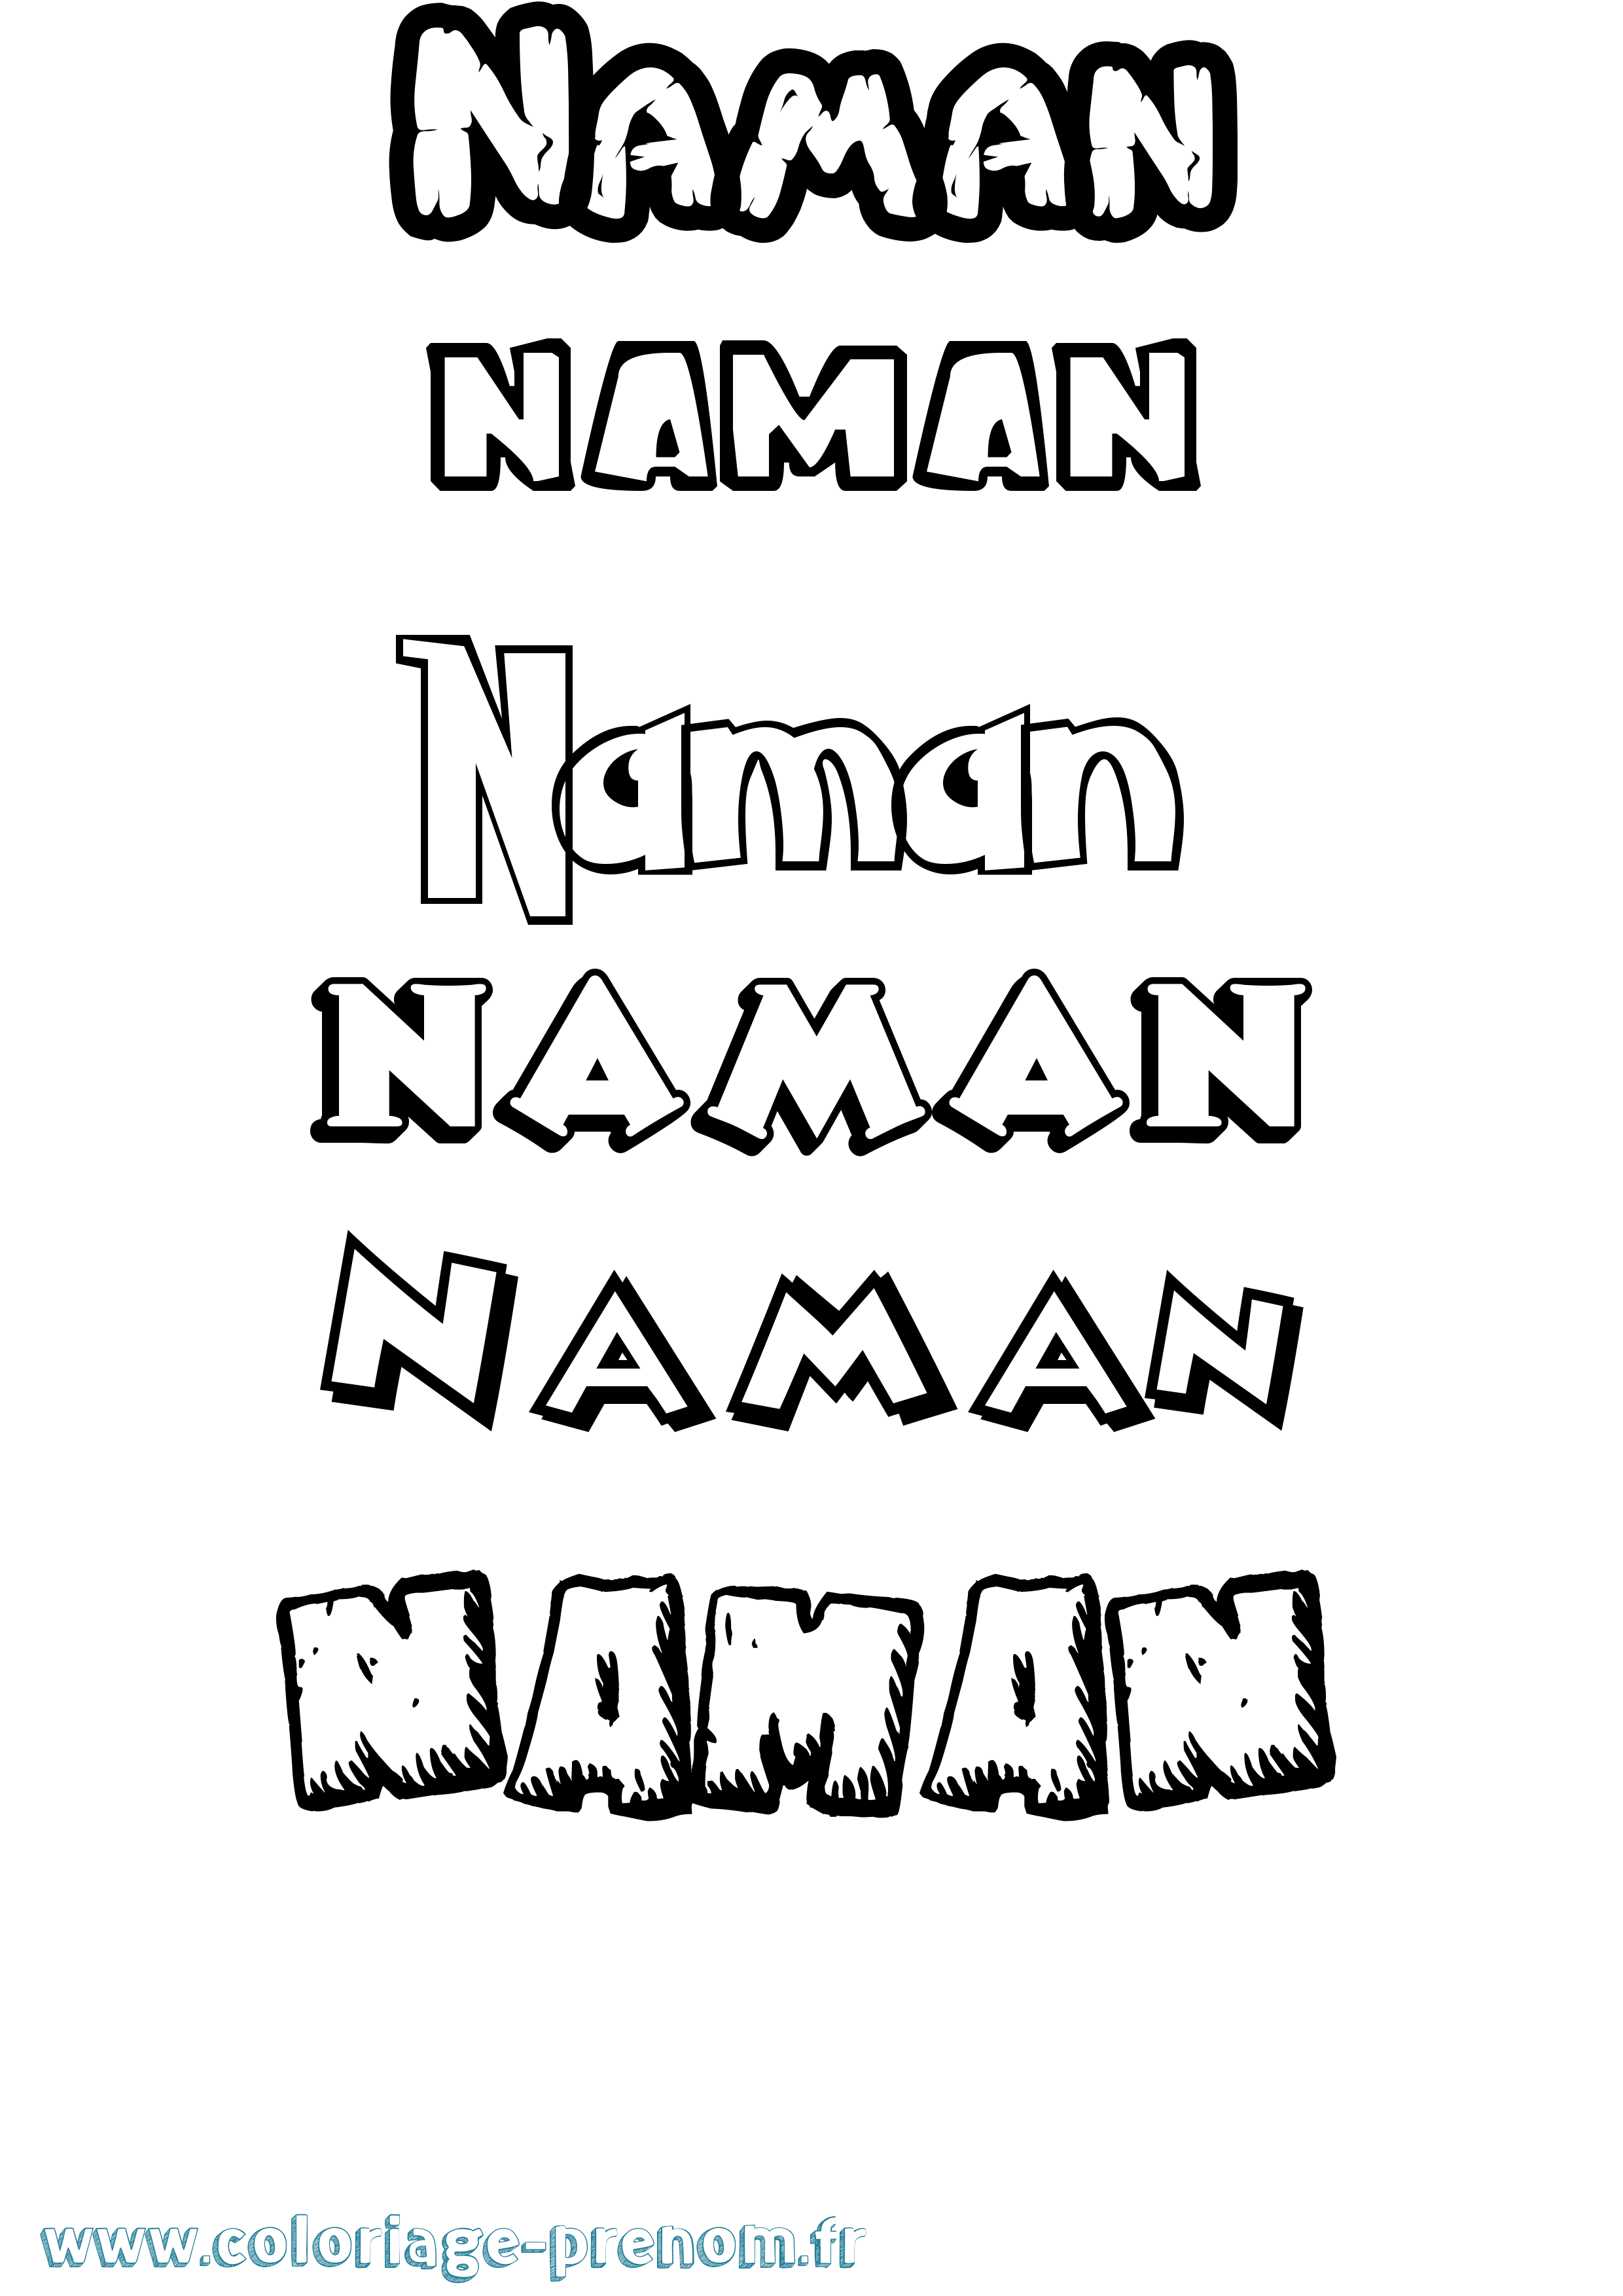 Coloriage prénom Naman Dessin Animé